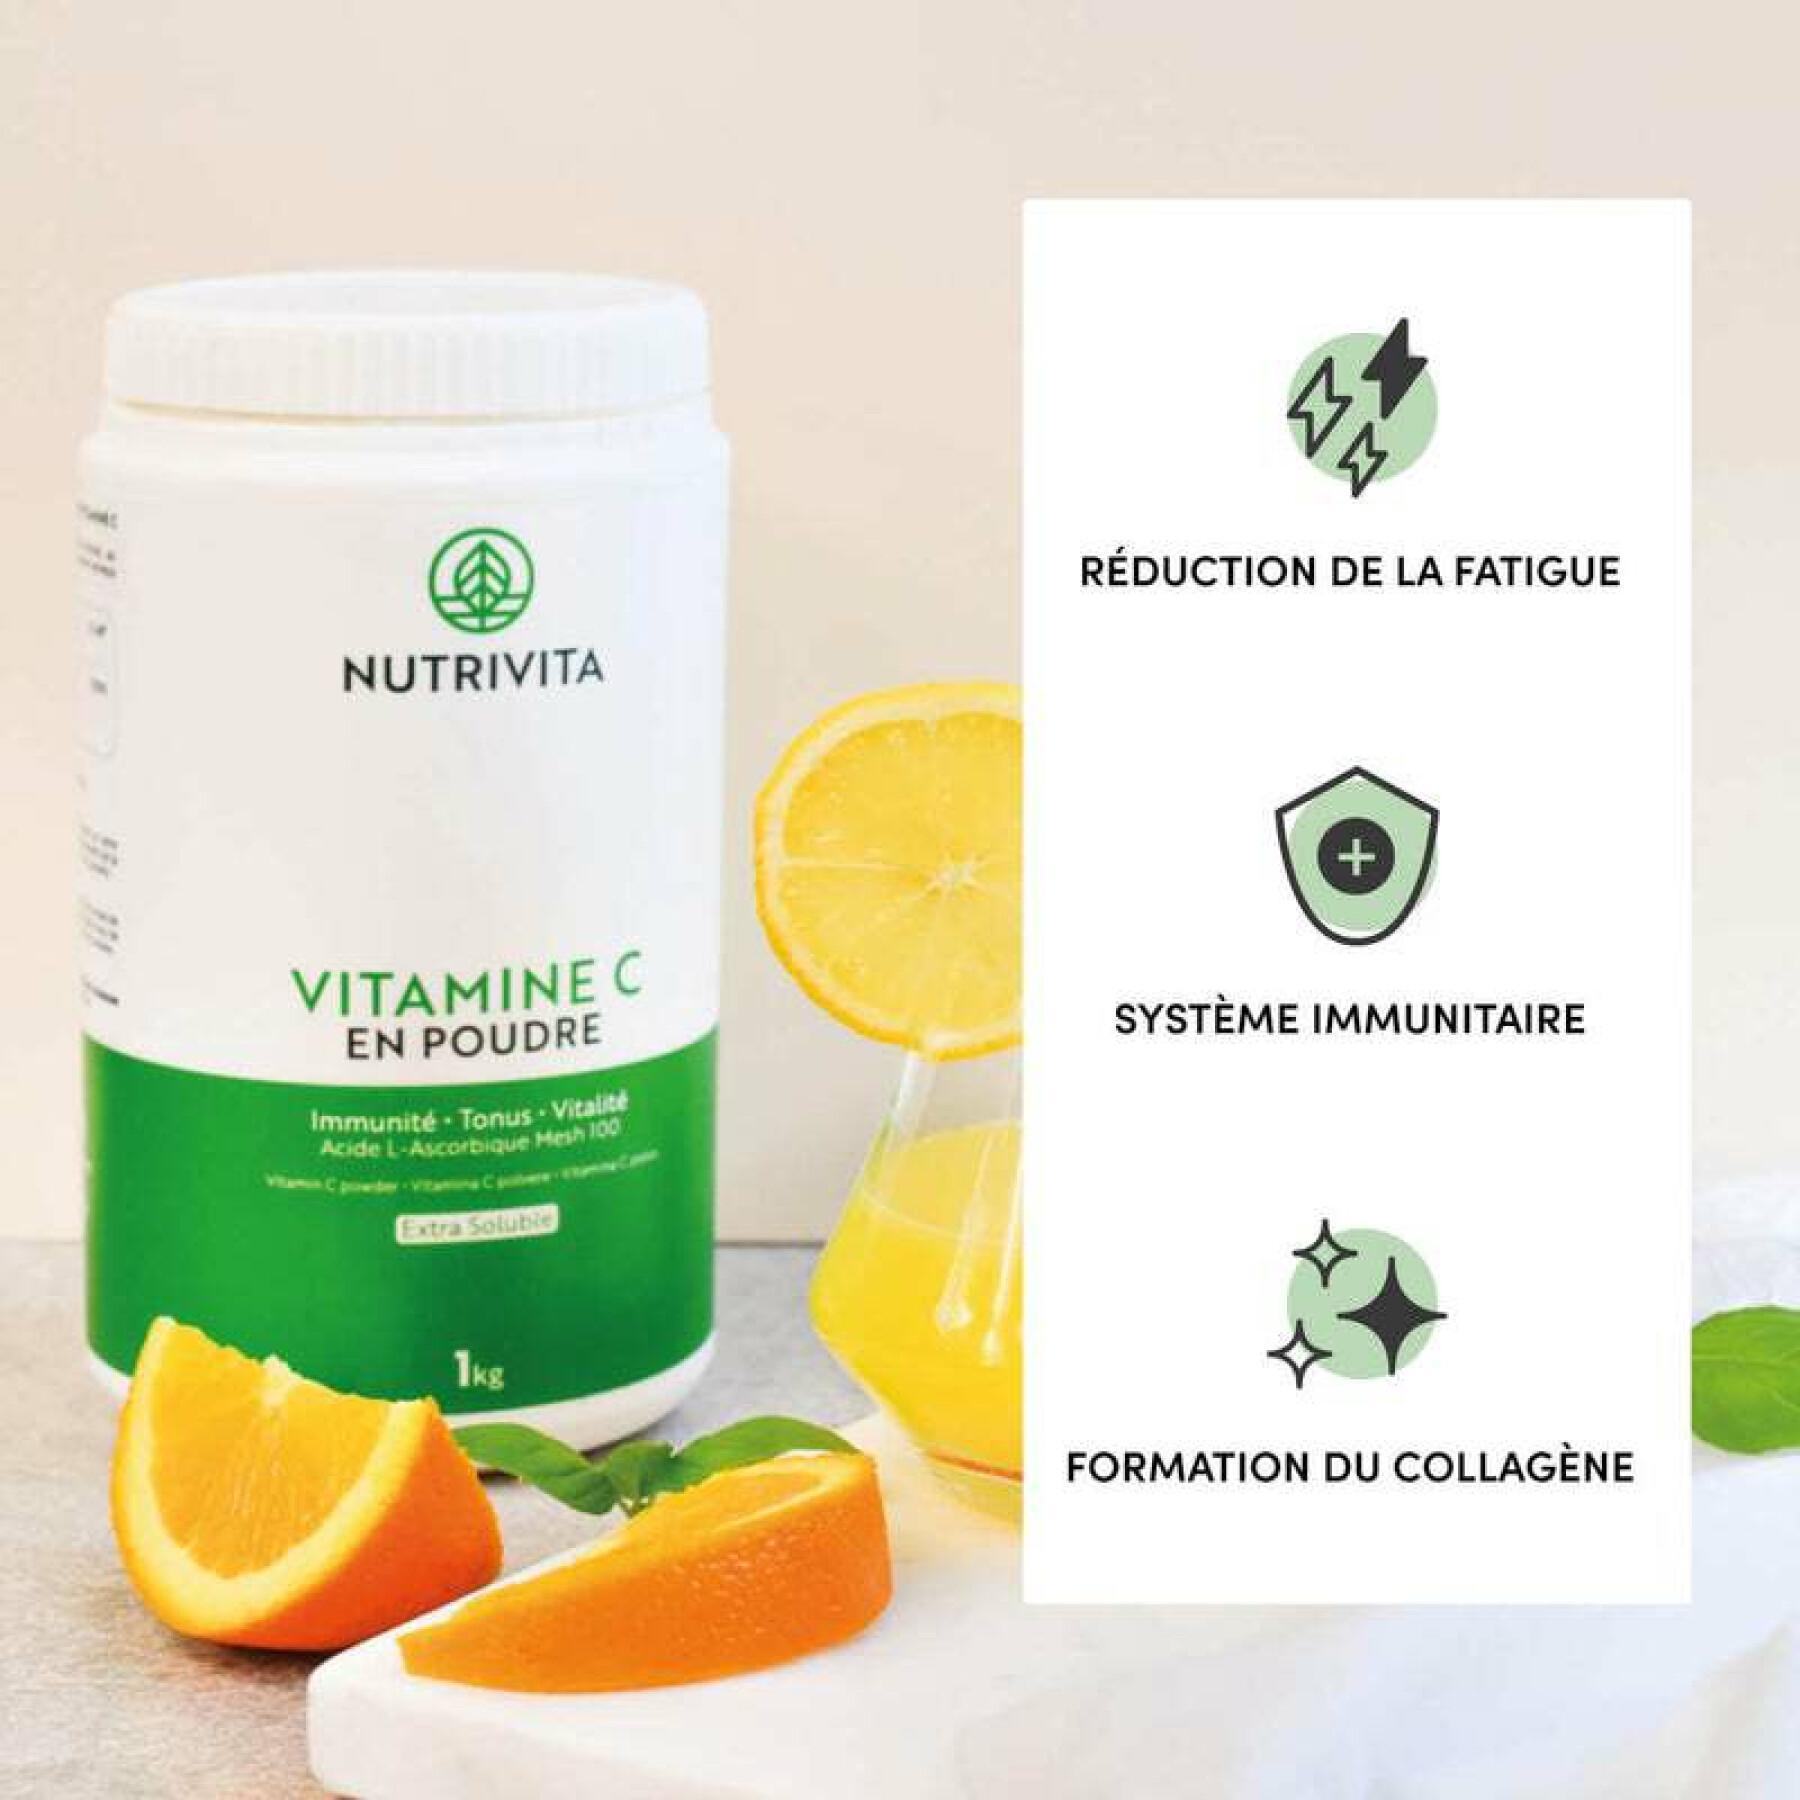 Food supplement vitamin c in powder 1kg Nutrivita